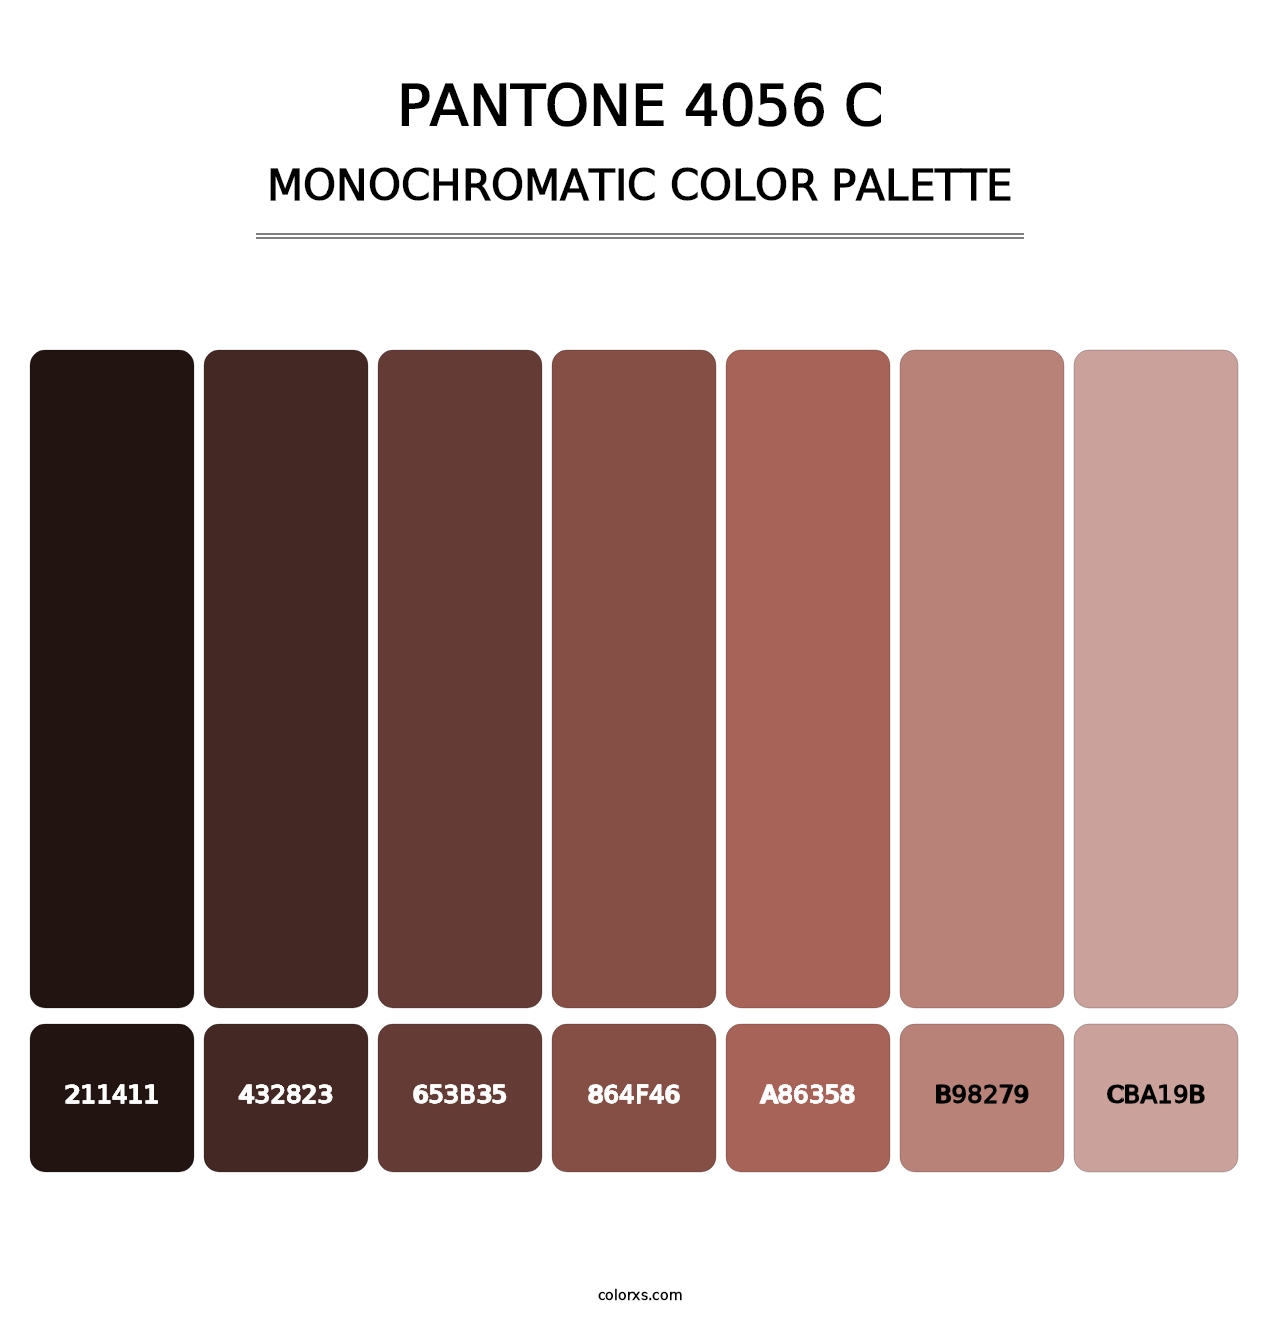 PANTONE 4056 C - Monochromatic Color Palette